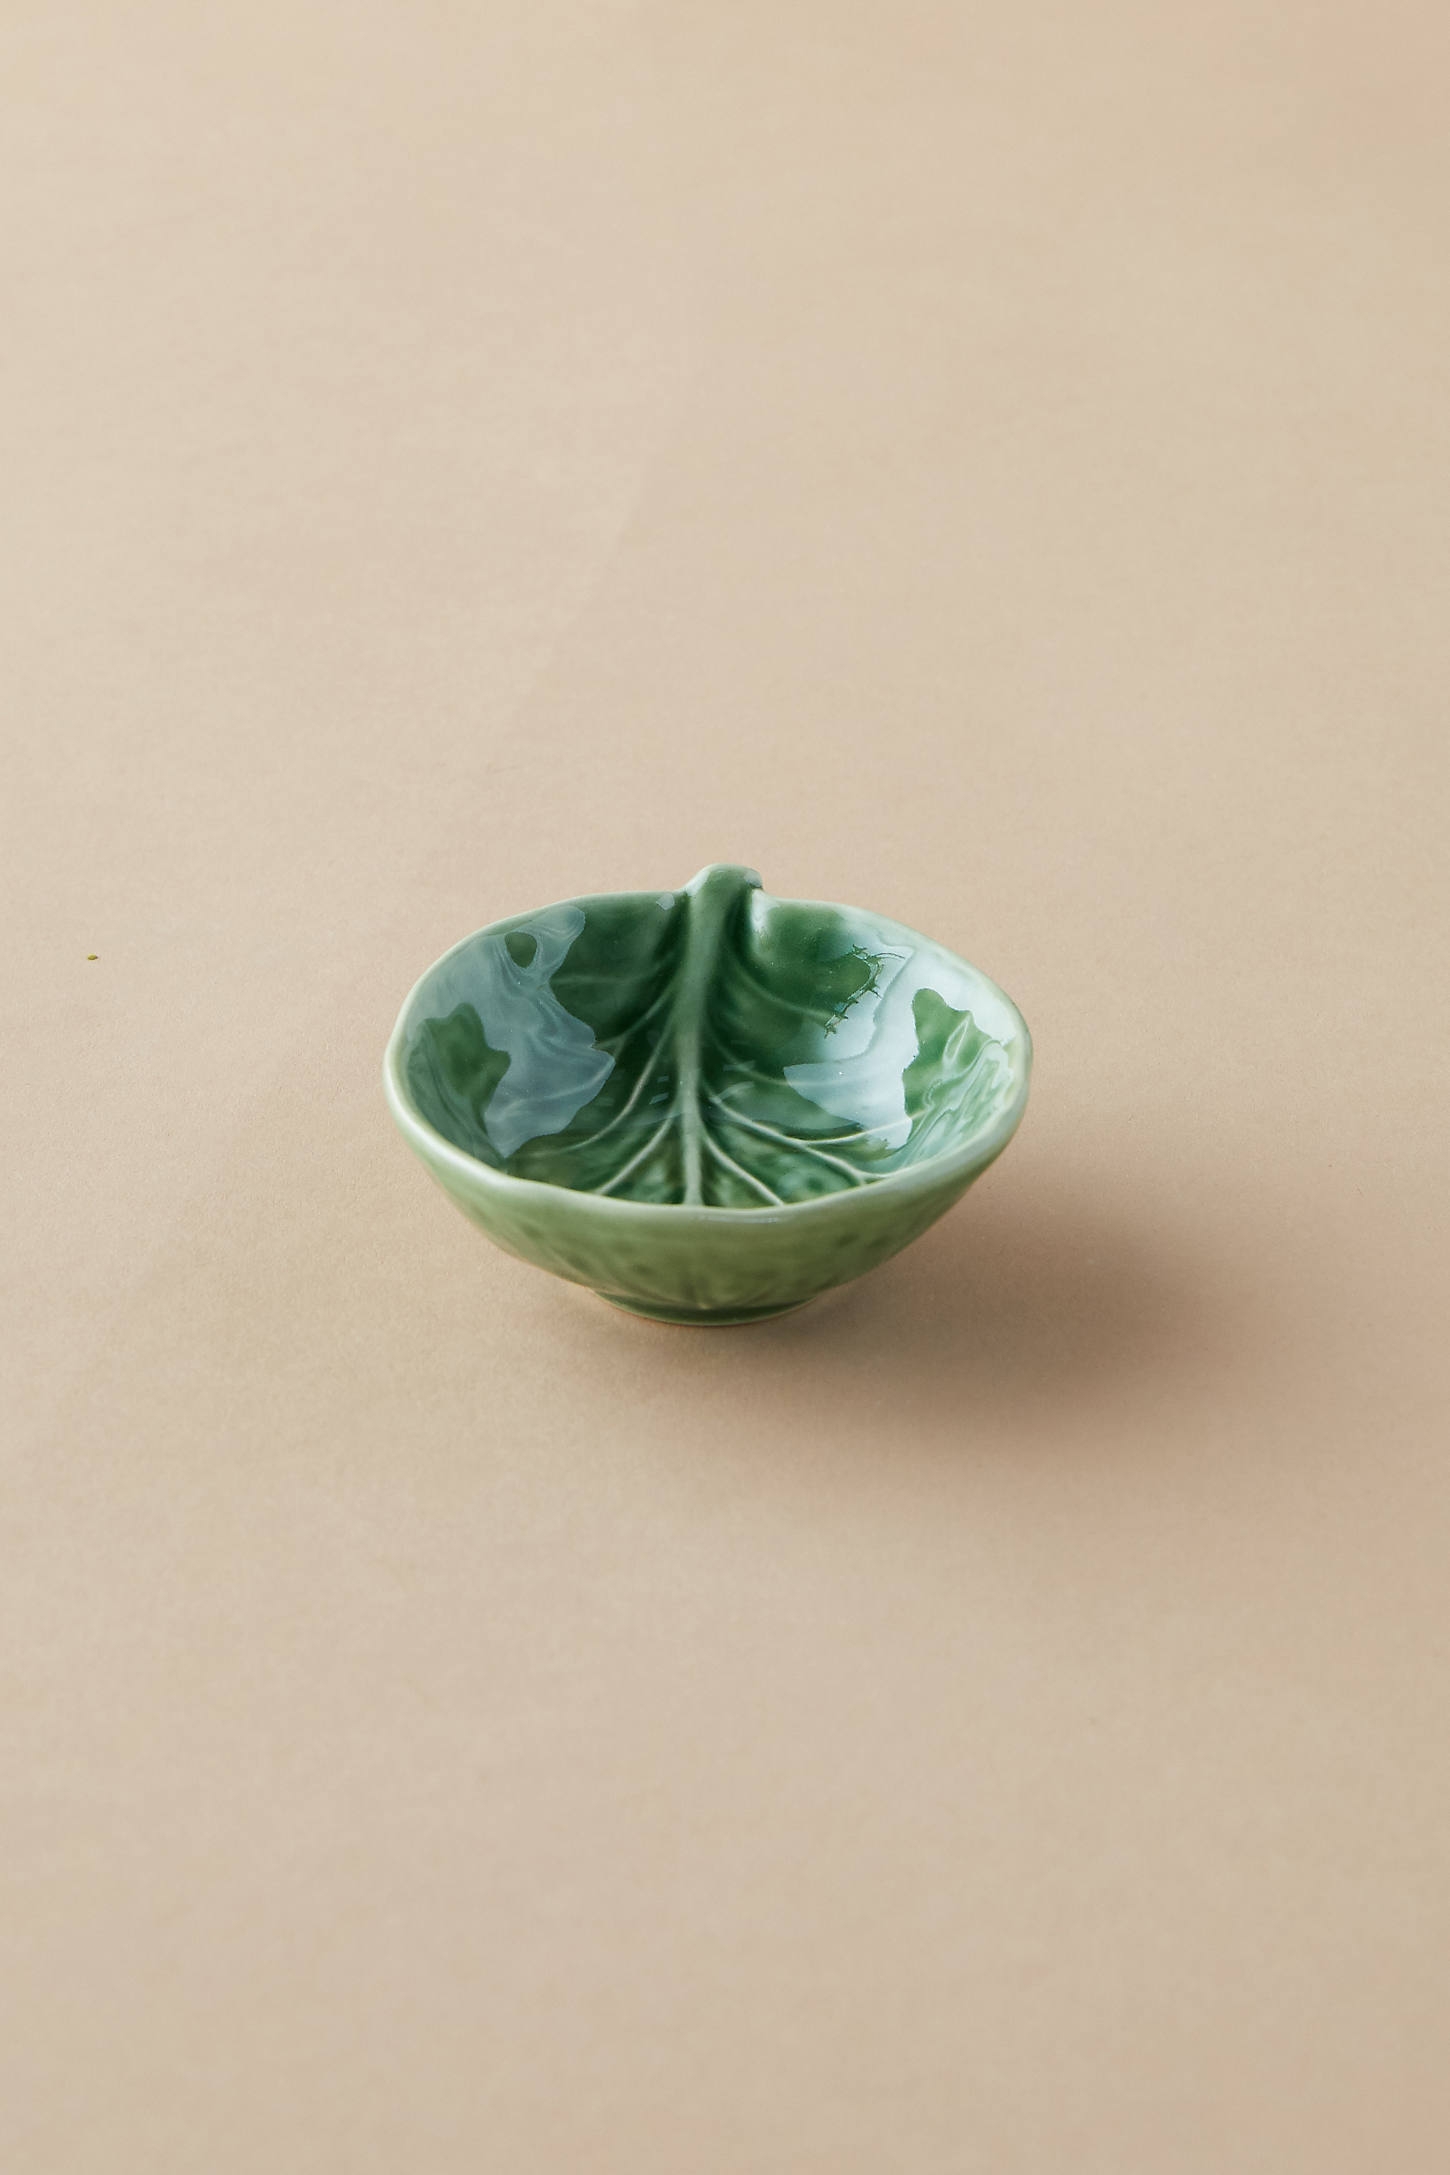 Ceramic Cabbage Salt Cellar - Image 0